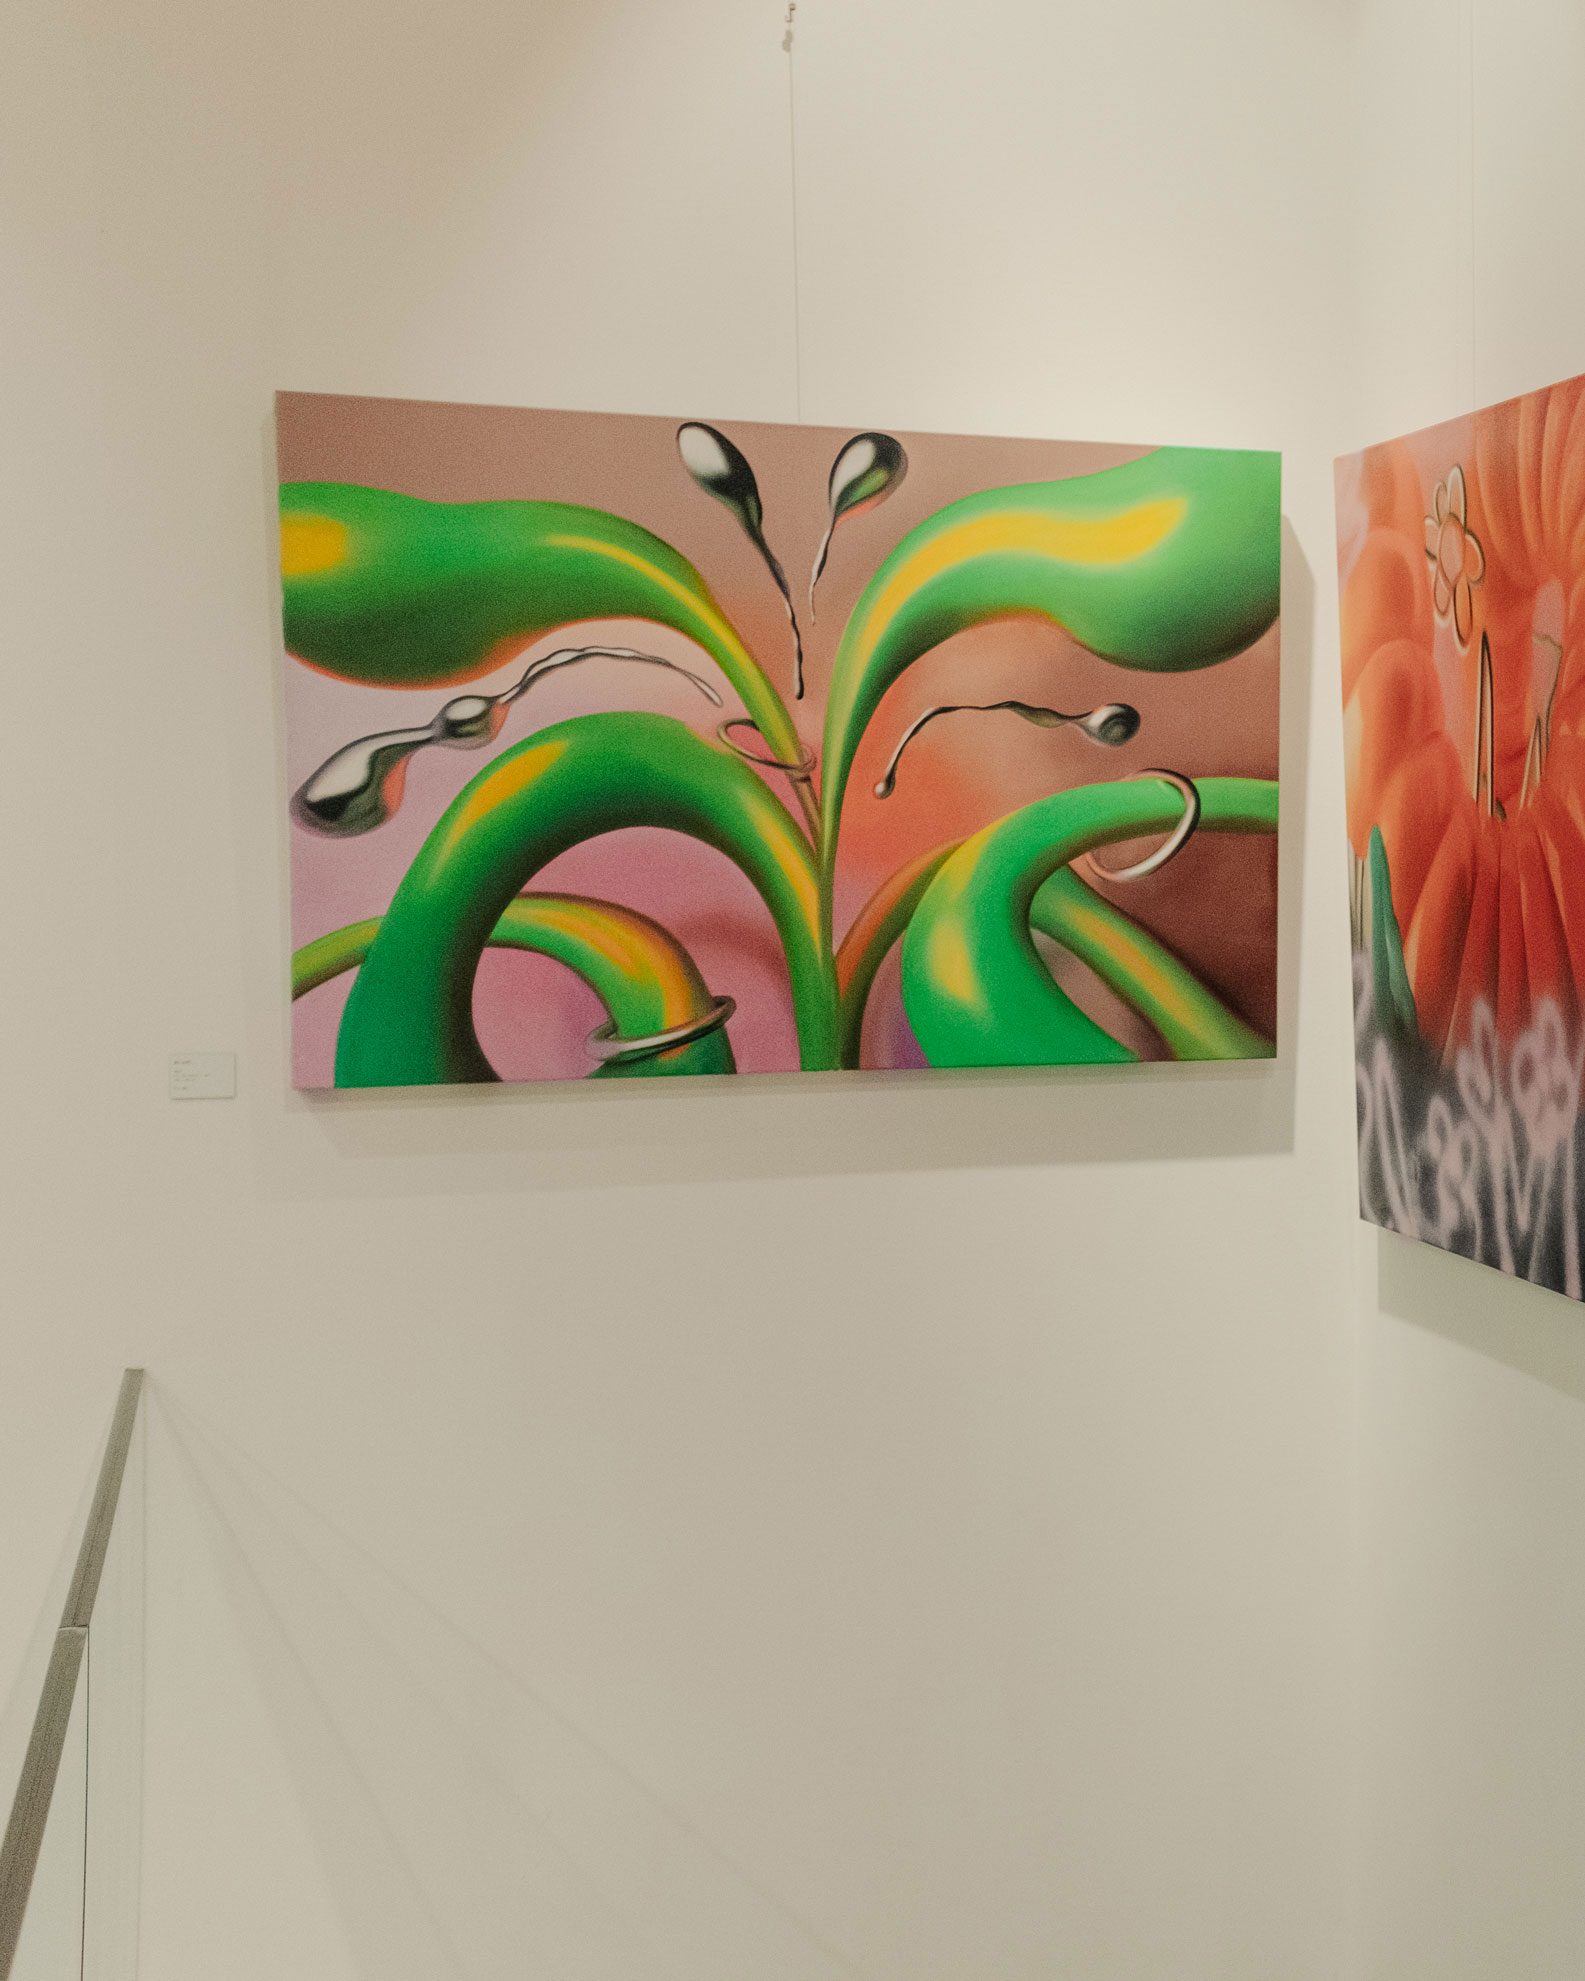 Ju-Schnee_art_kunst_wien_painting_exhibition_abstract_Meta05-8